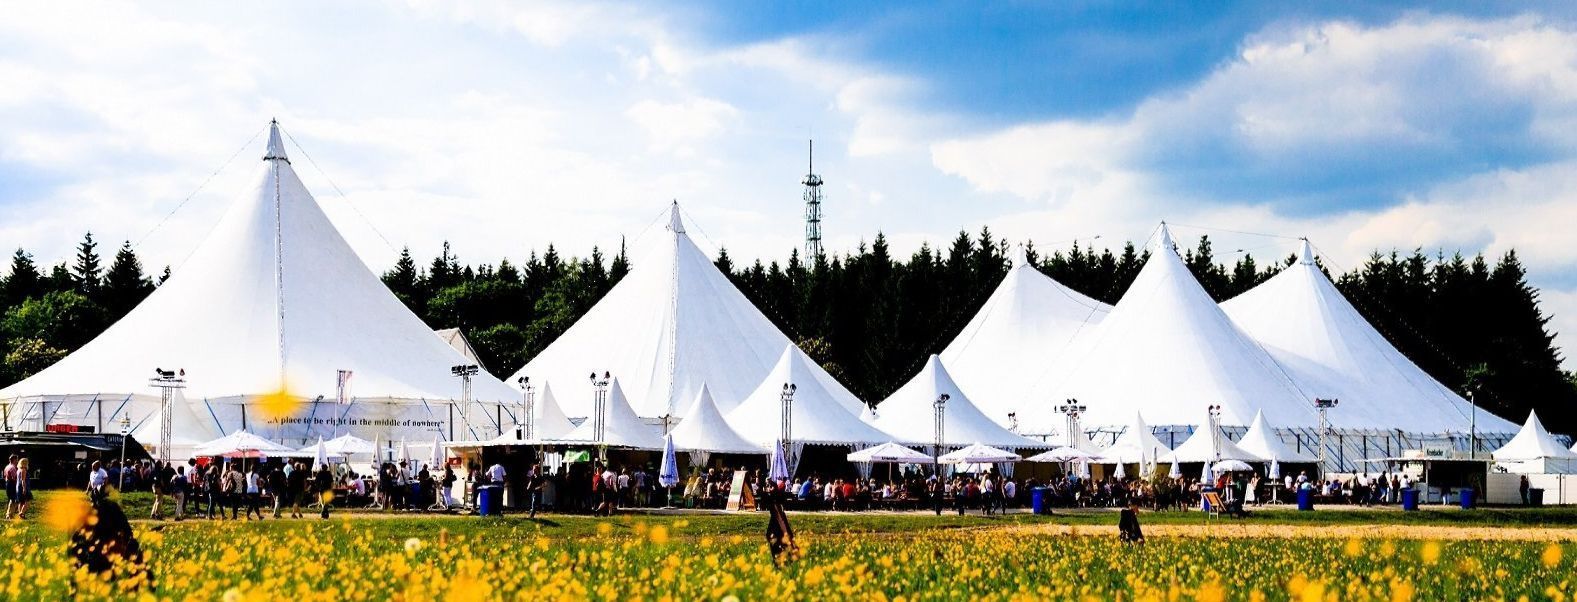 KulturPur-Zeltstadt: Fünf große und mehrer kleine weiße Zelte mit spitzen Dächern auf einer Wiese. Die Wiese ist übersät mit gelben Löwenzahnblumen.